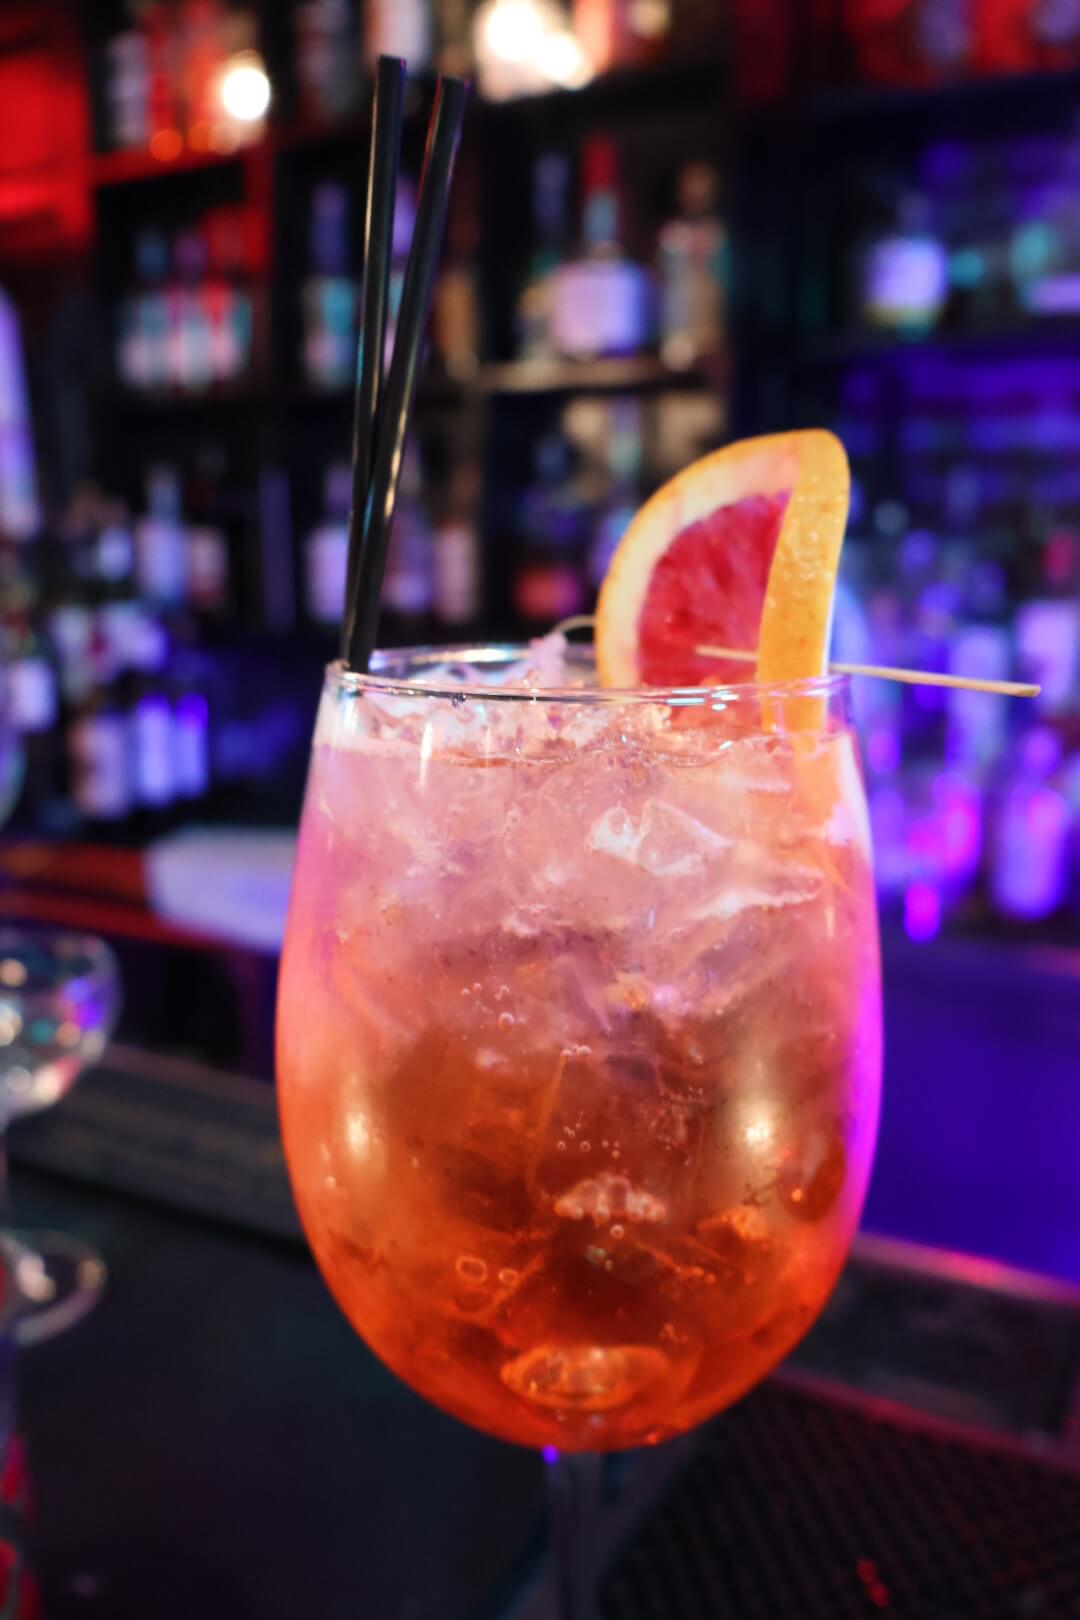 Cocktail with blood orange garnish